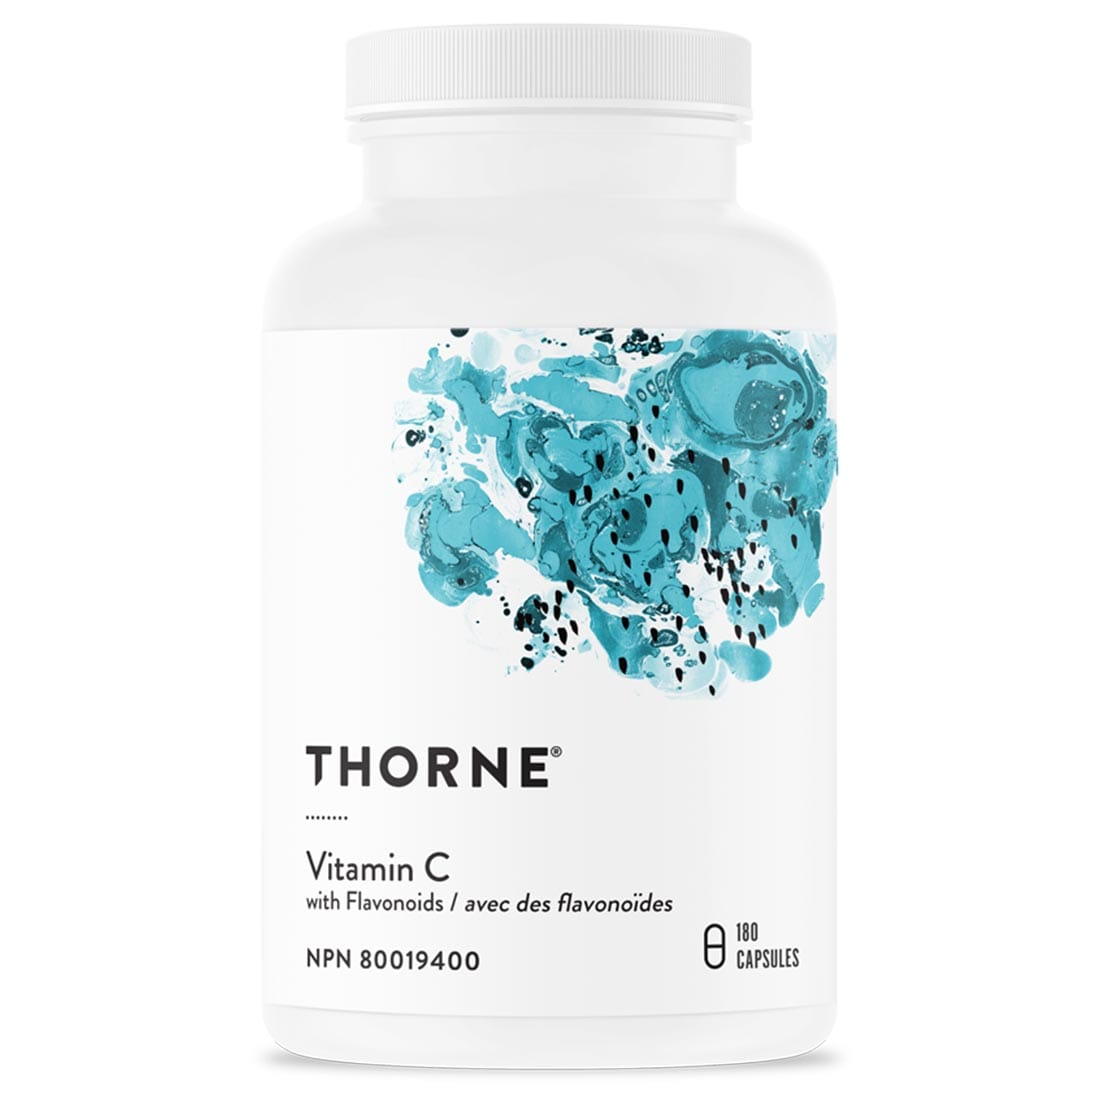 Thorne Vitamin C with Flavonoids, 180 Capsules